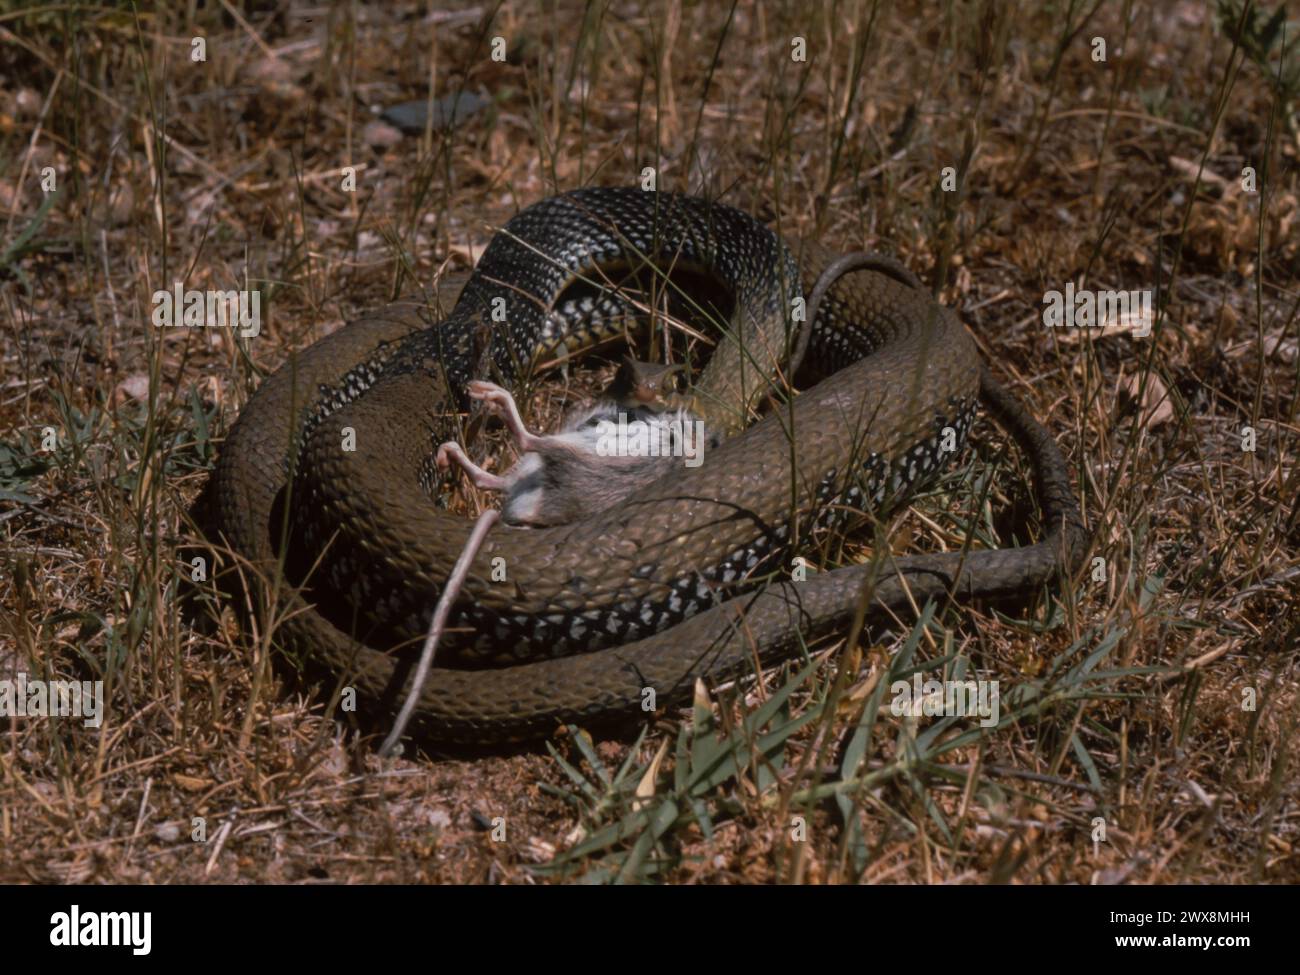 Montpellier snake (Malpolon monspessulanus) eating a rodent Stock Photo